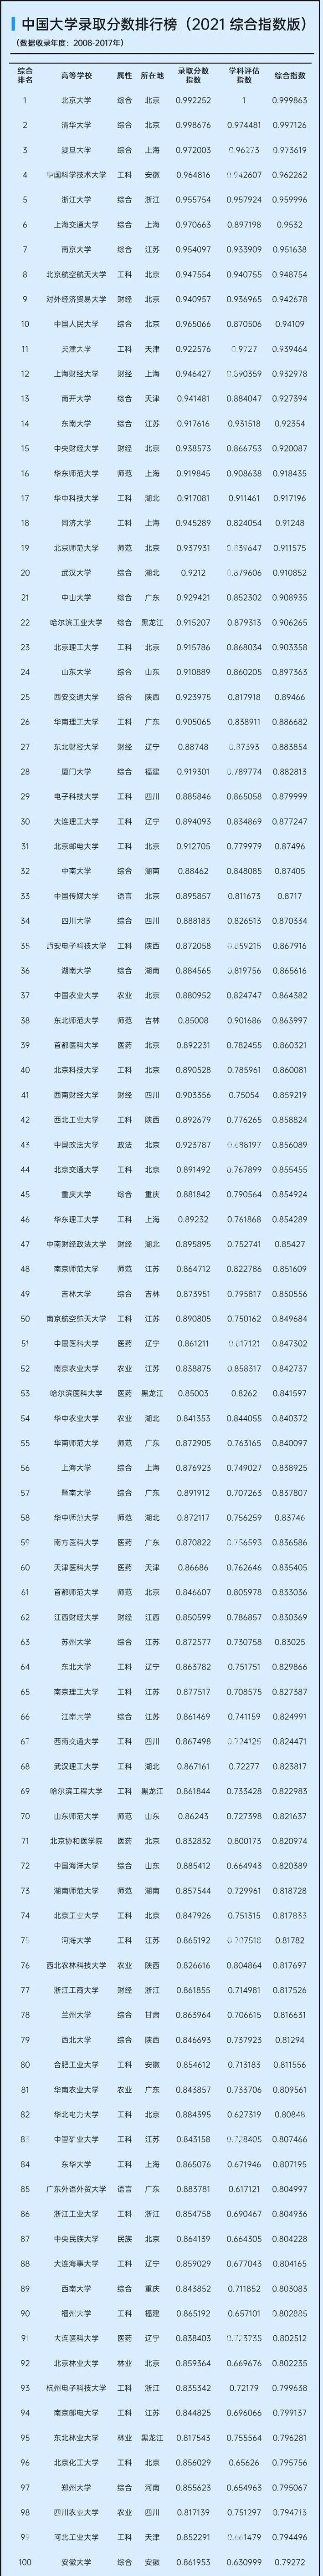 中国大学排行榜2021_2021山东高校排名:43所大学上榜,青岛大学居第4,进入全国百强